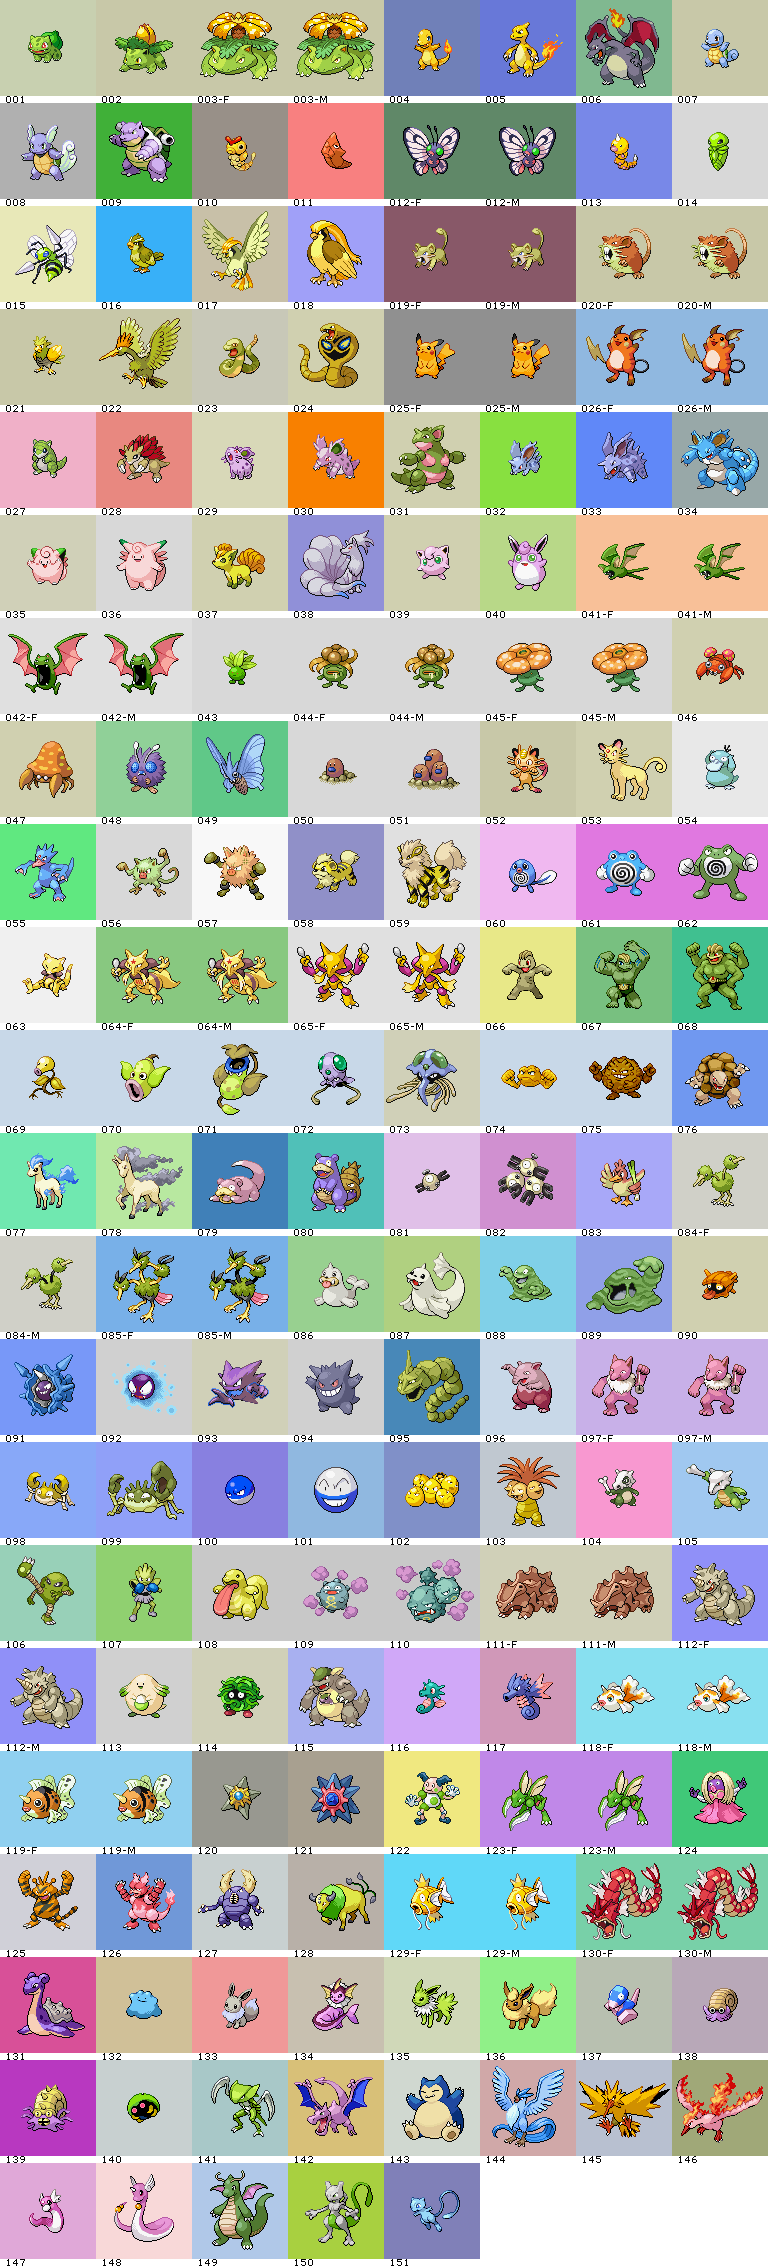 Pokémon (1st Generation, Shiny, Front)